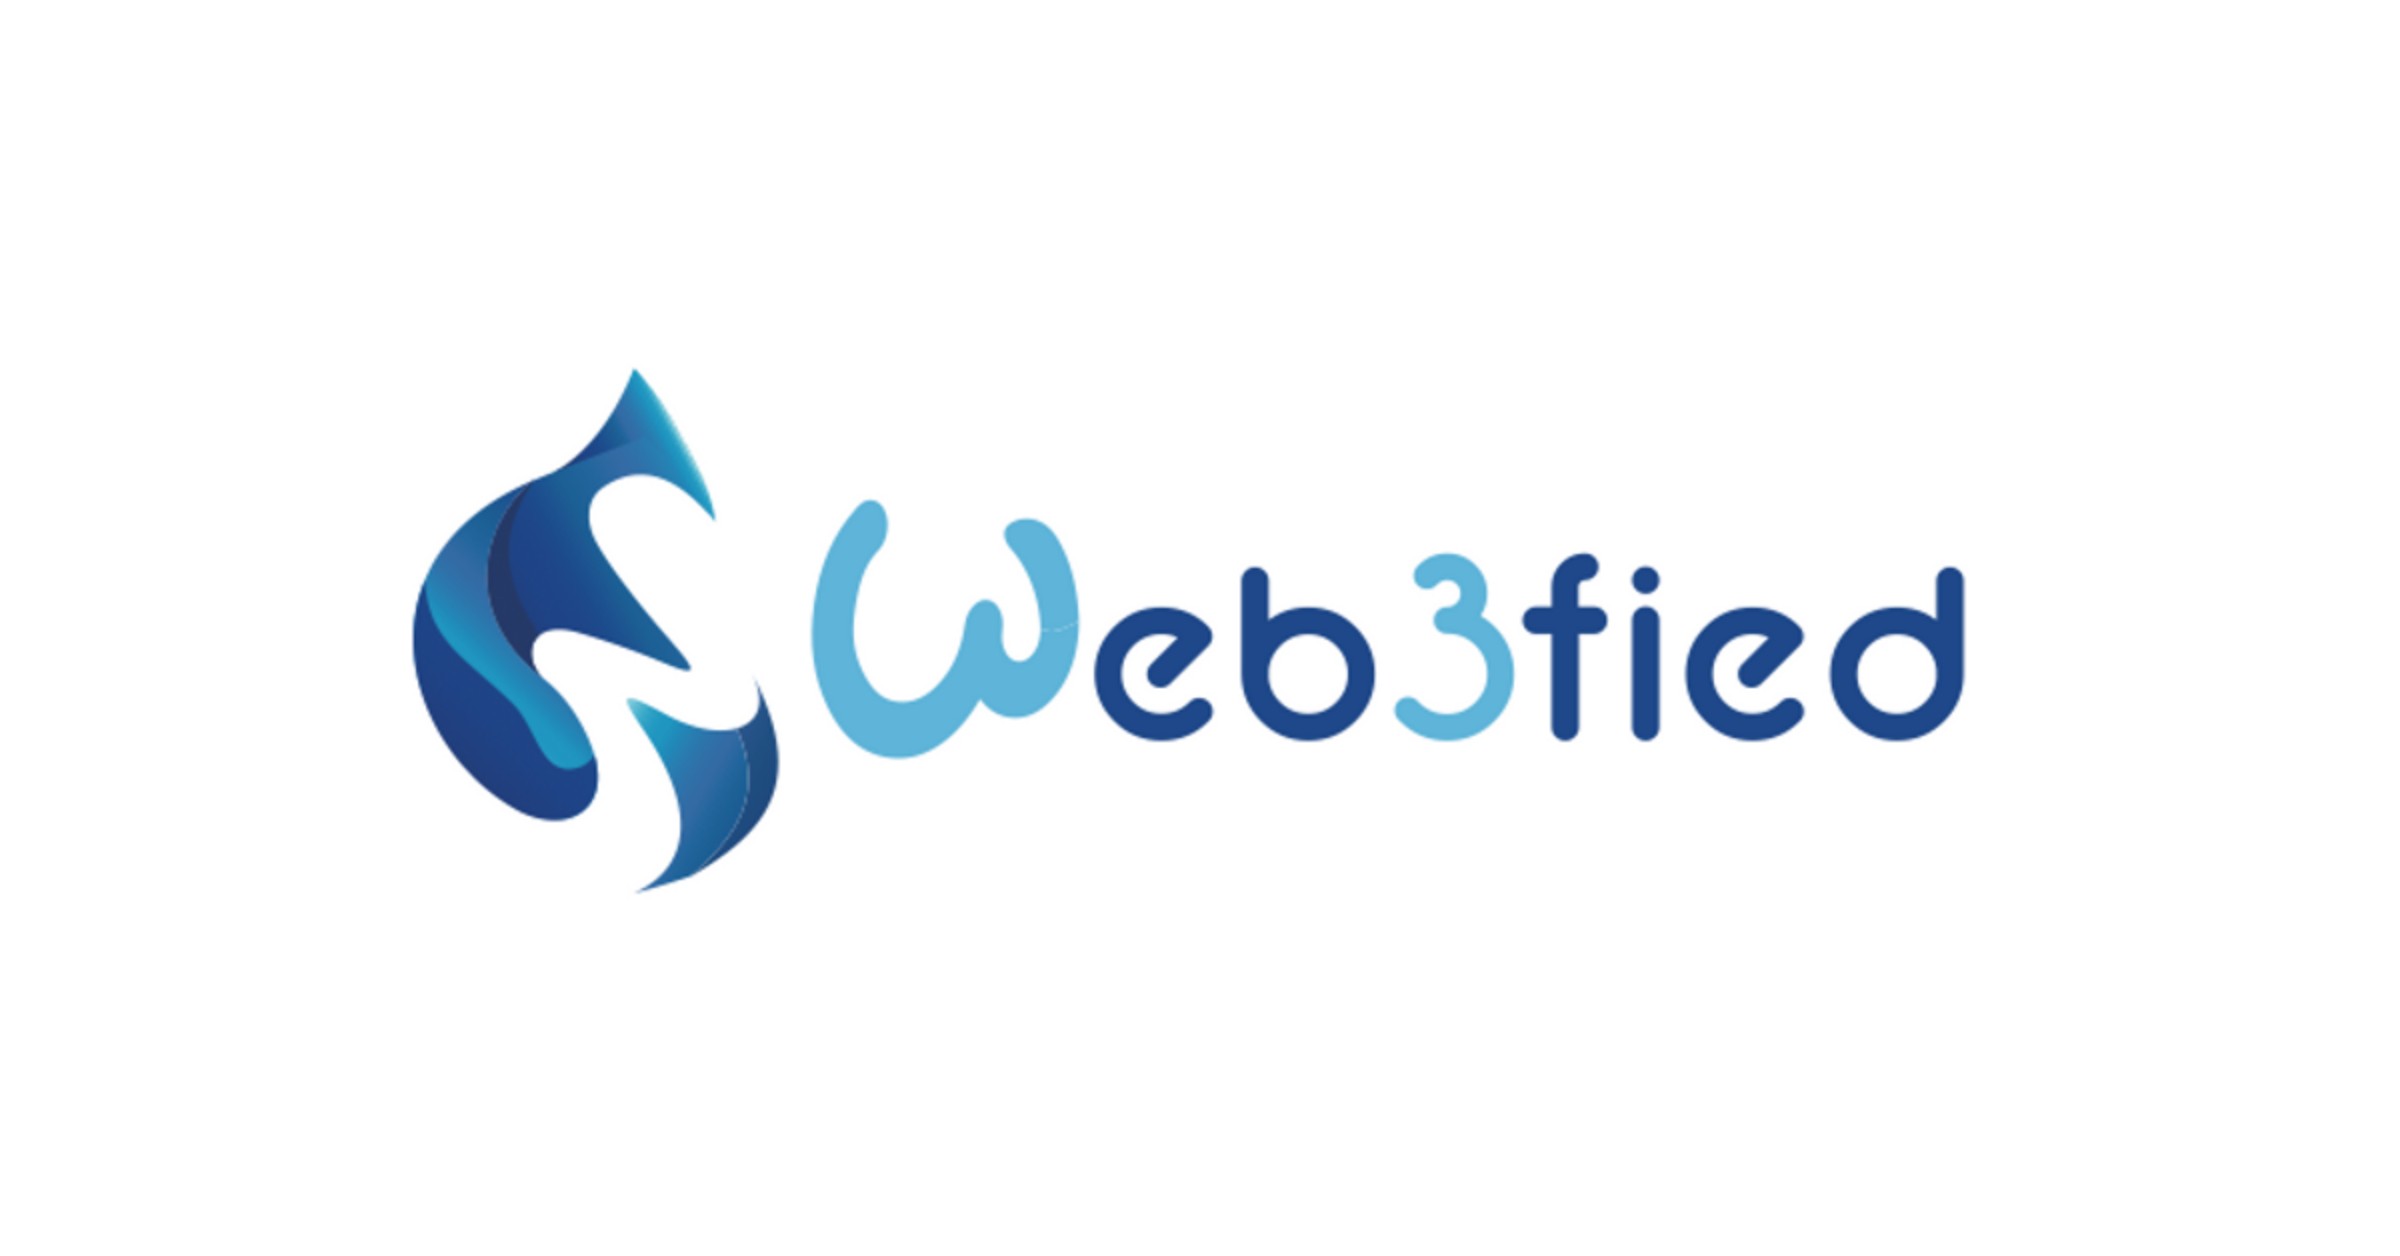 Web3Fied logo